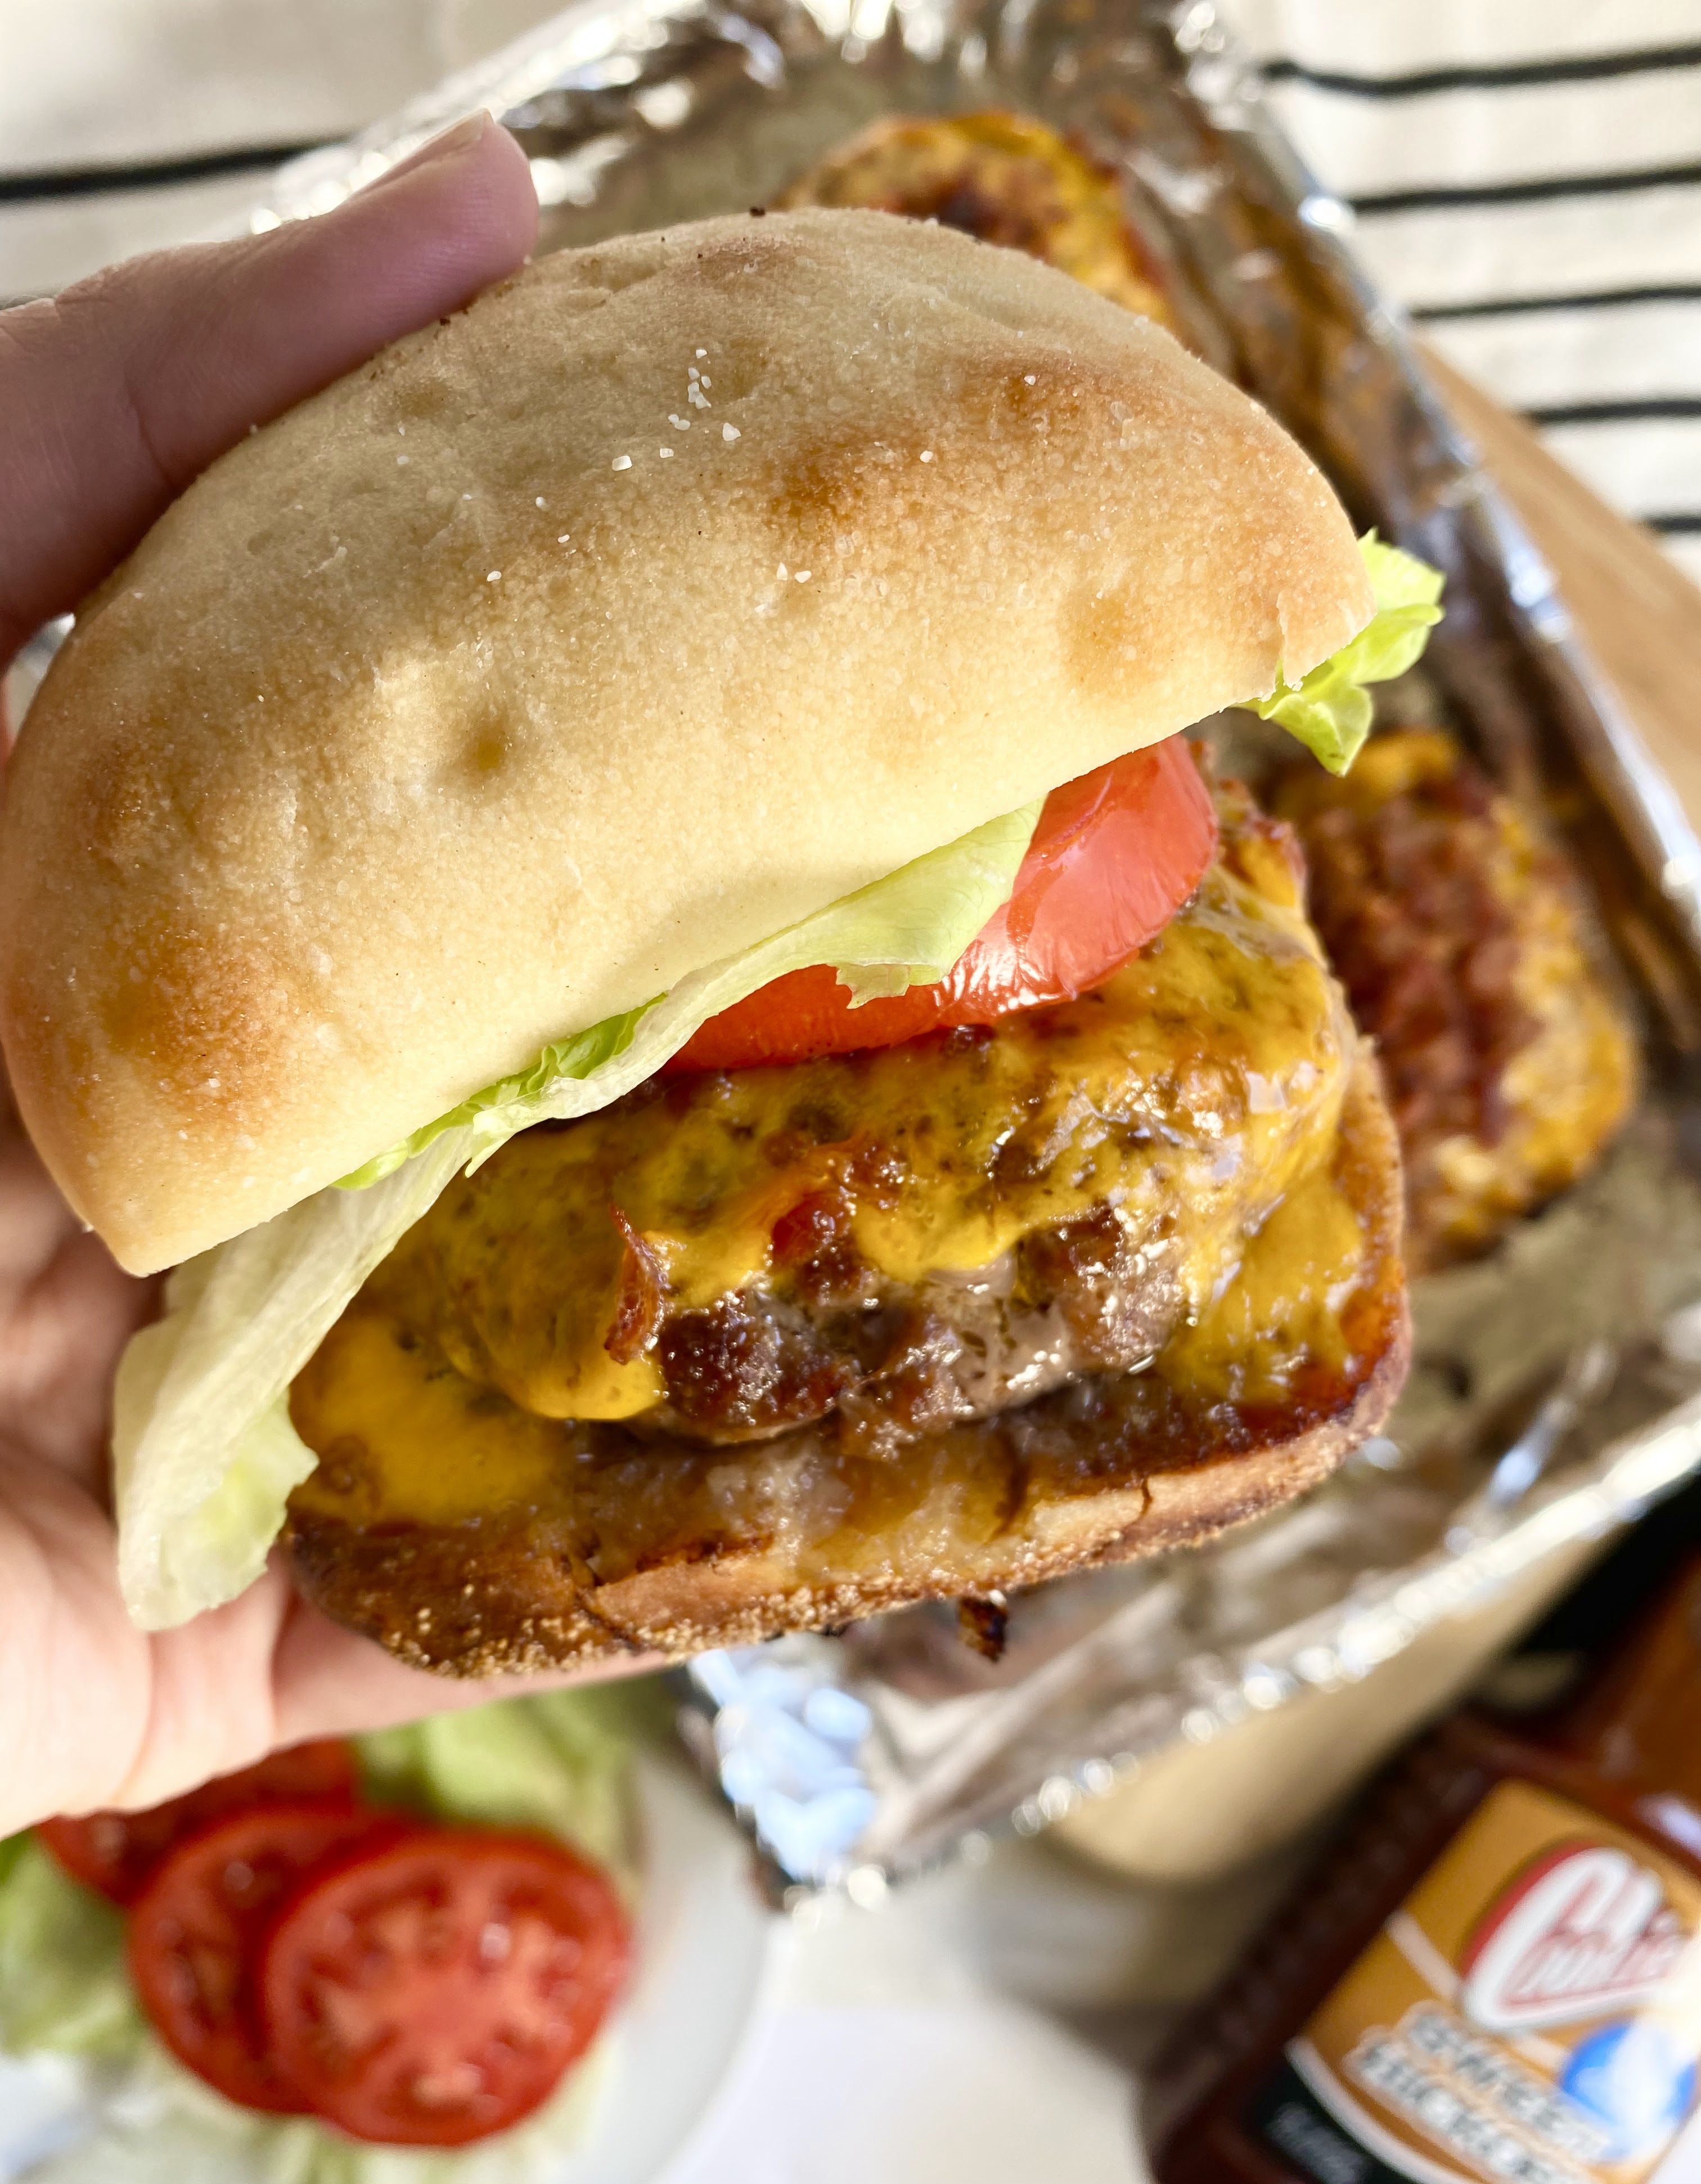  Quick Review: Bacon Cheeseburger at Pappa's BBQ